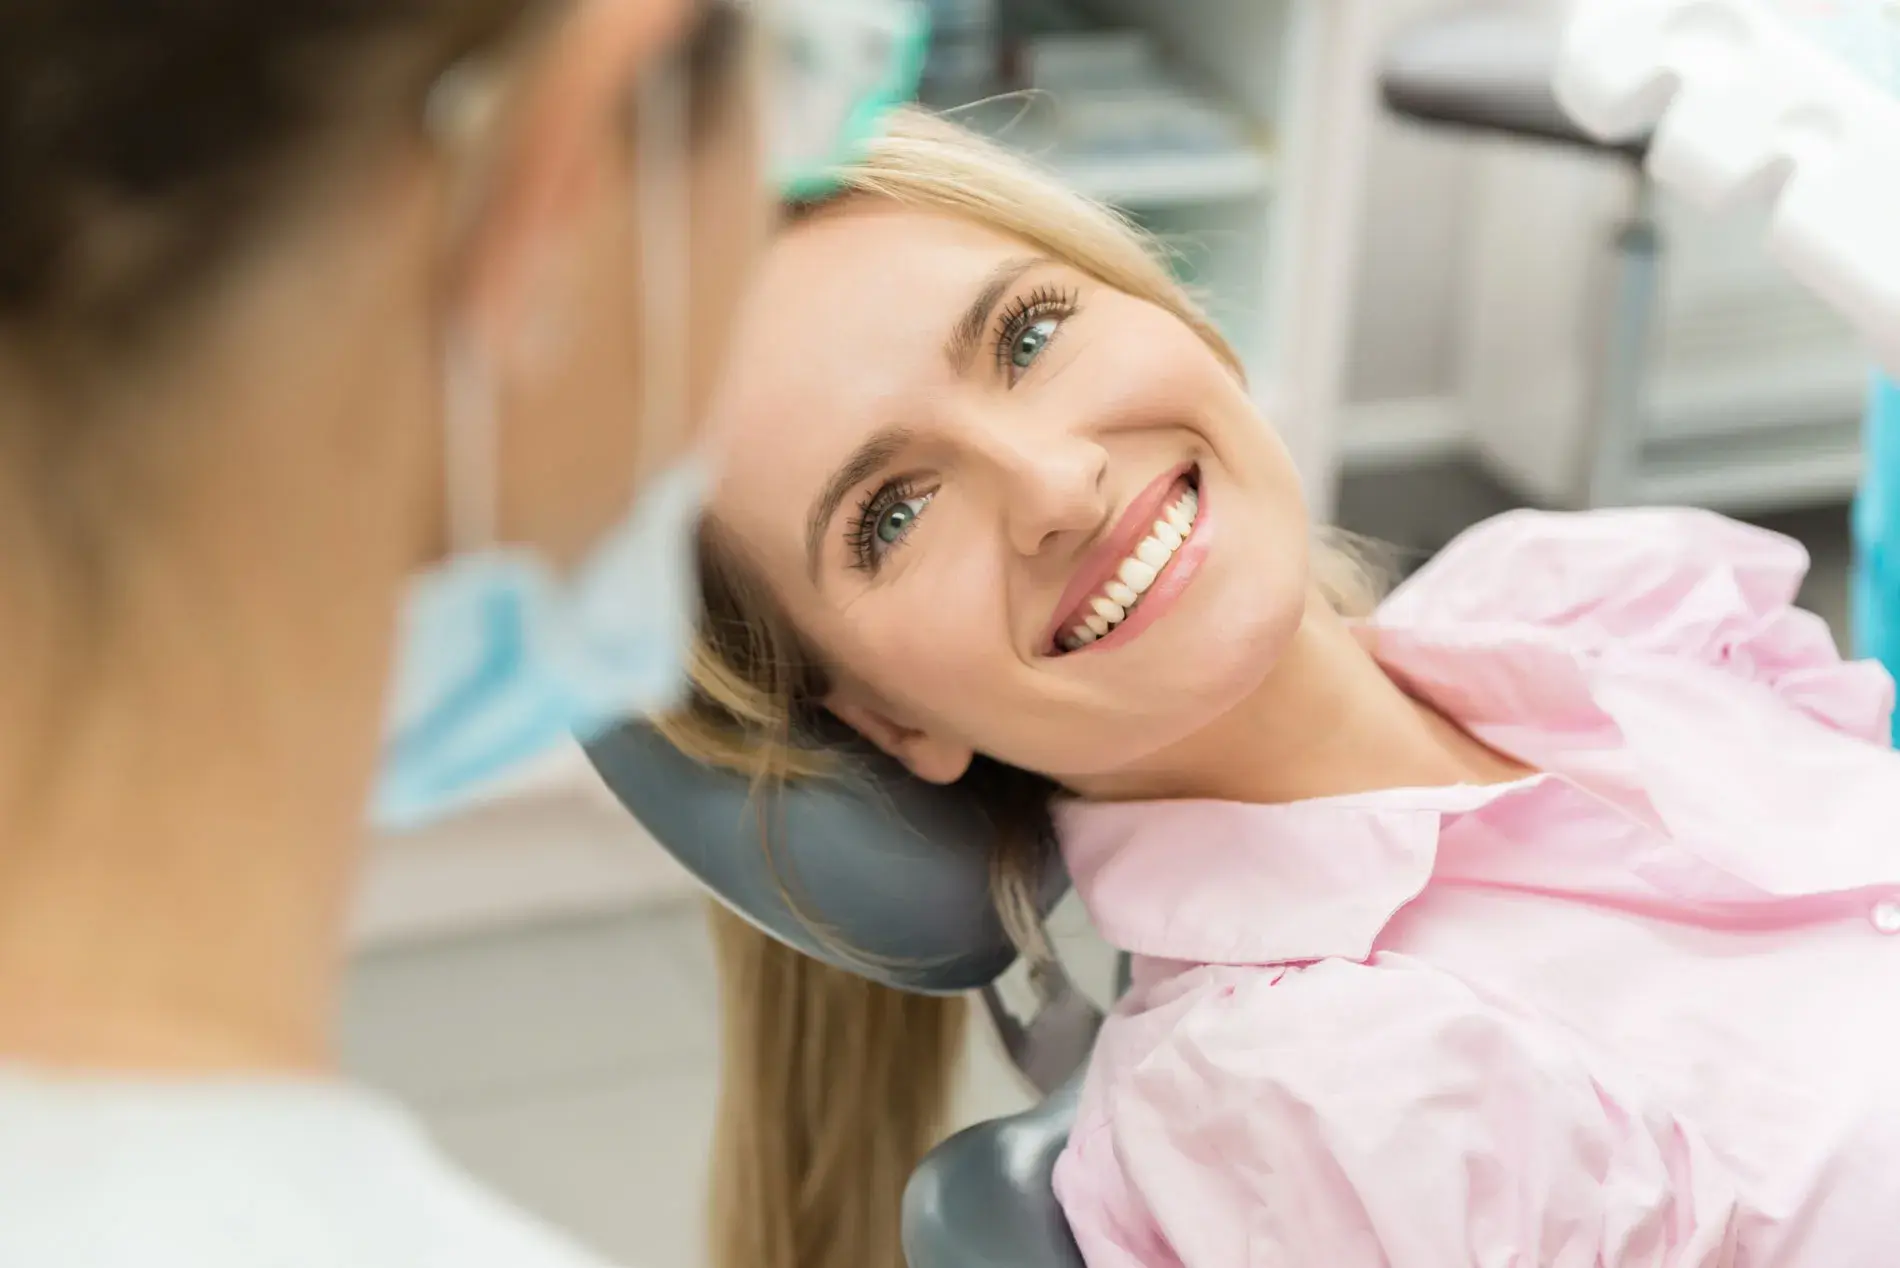 promoción Adeslas dental 3 meses gratis